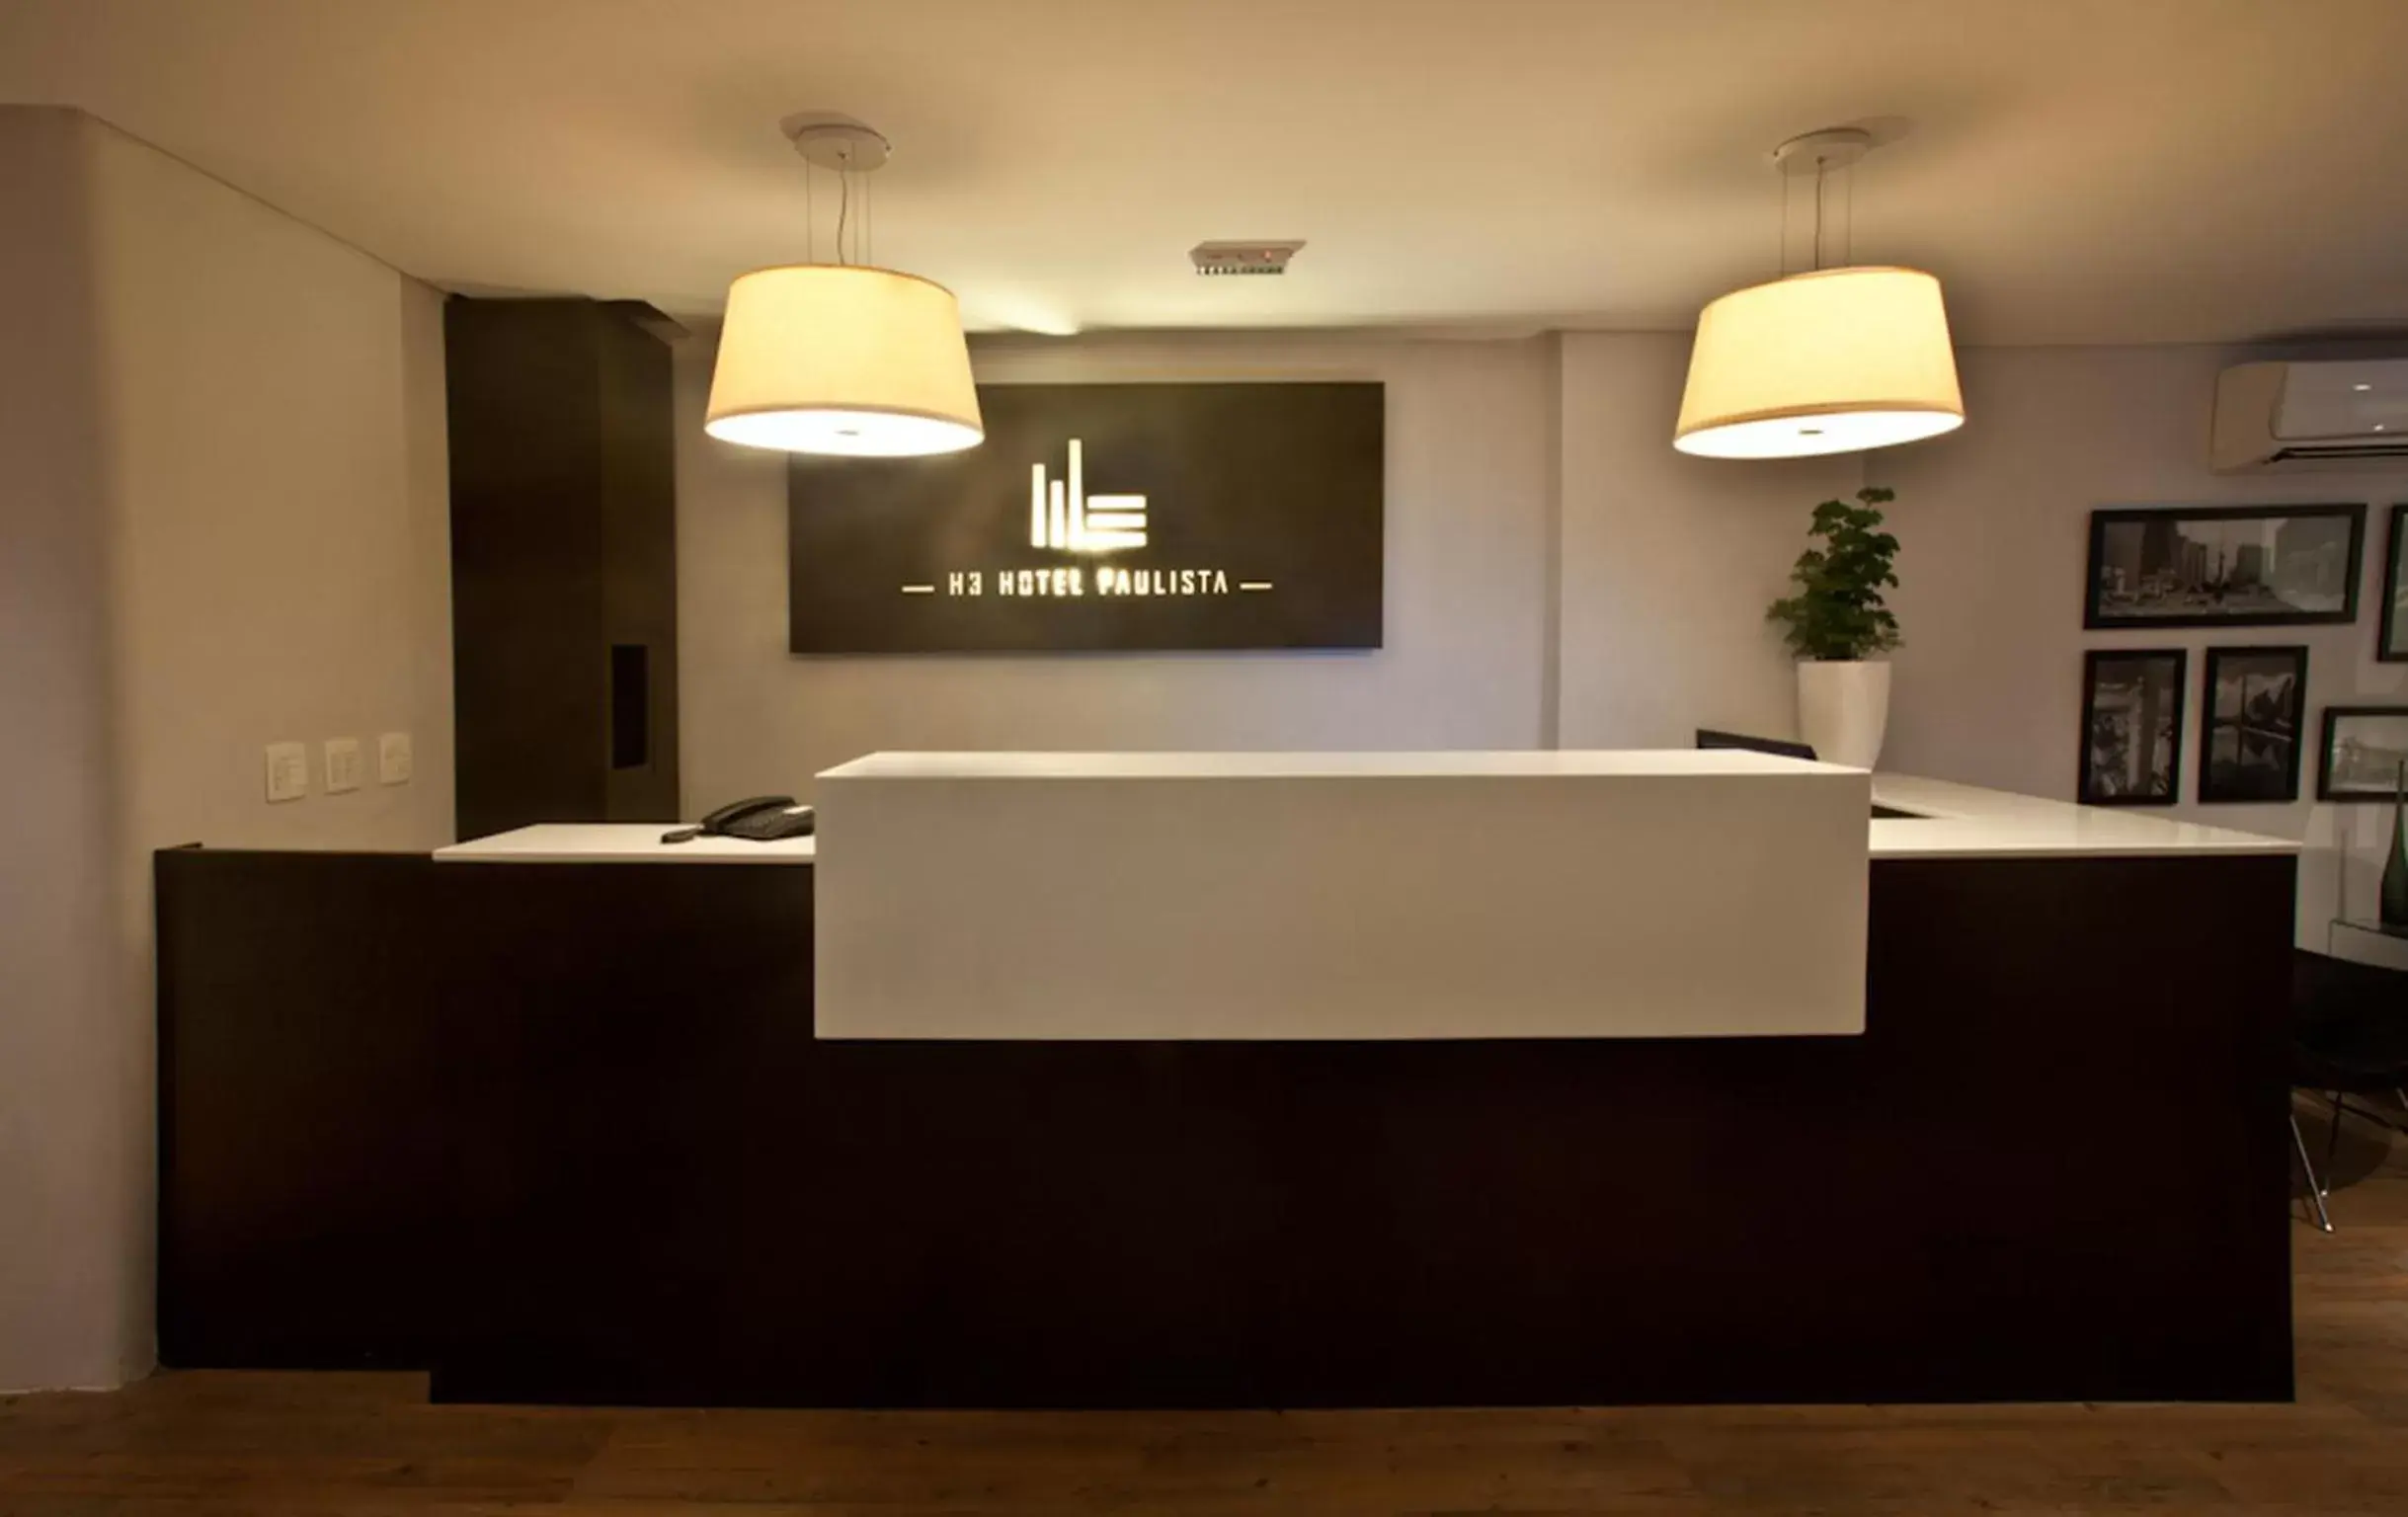 Lobby or reception, Lobby/Reception in H3 Hotel Paulista